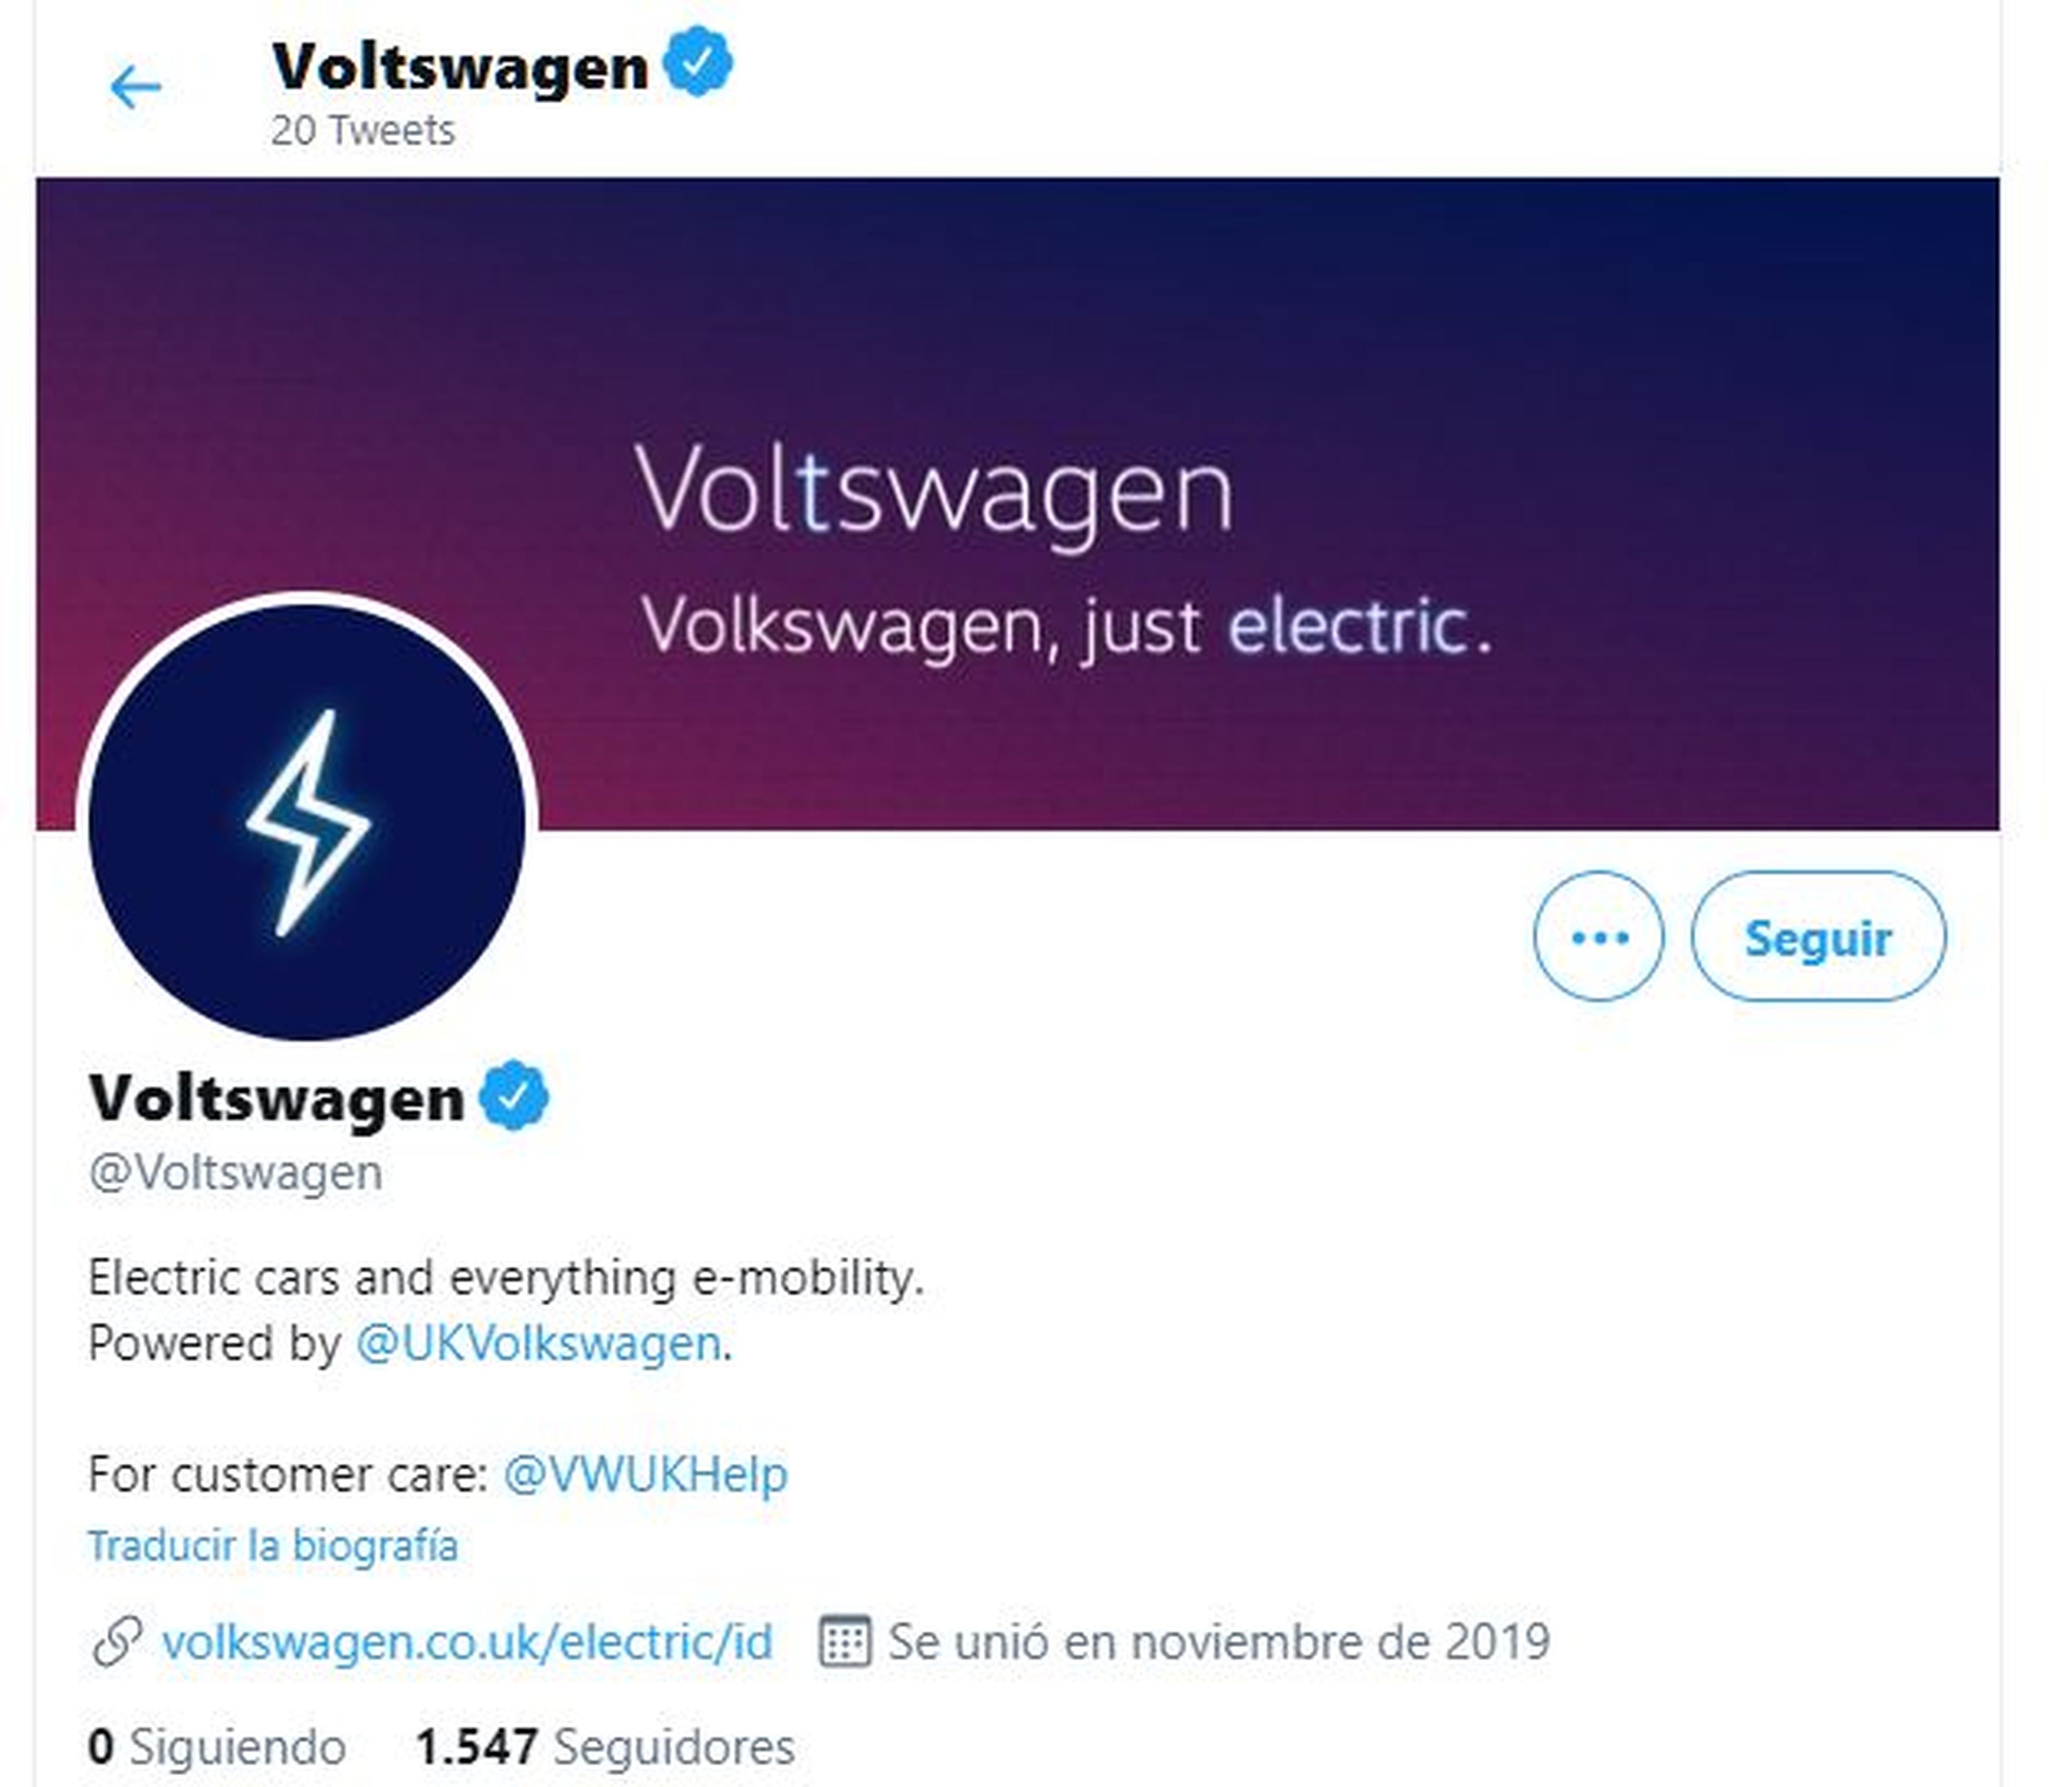 Cuenta @Voltswagen en Twitter, creada por la filial británica de Volkswagen